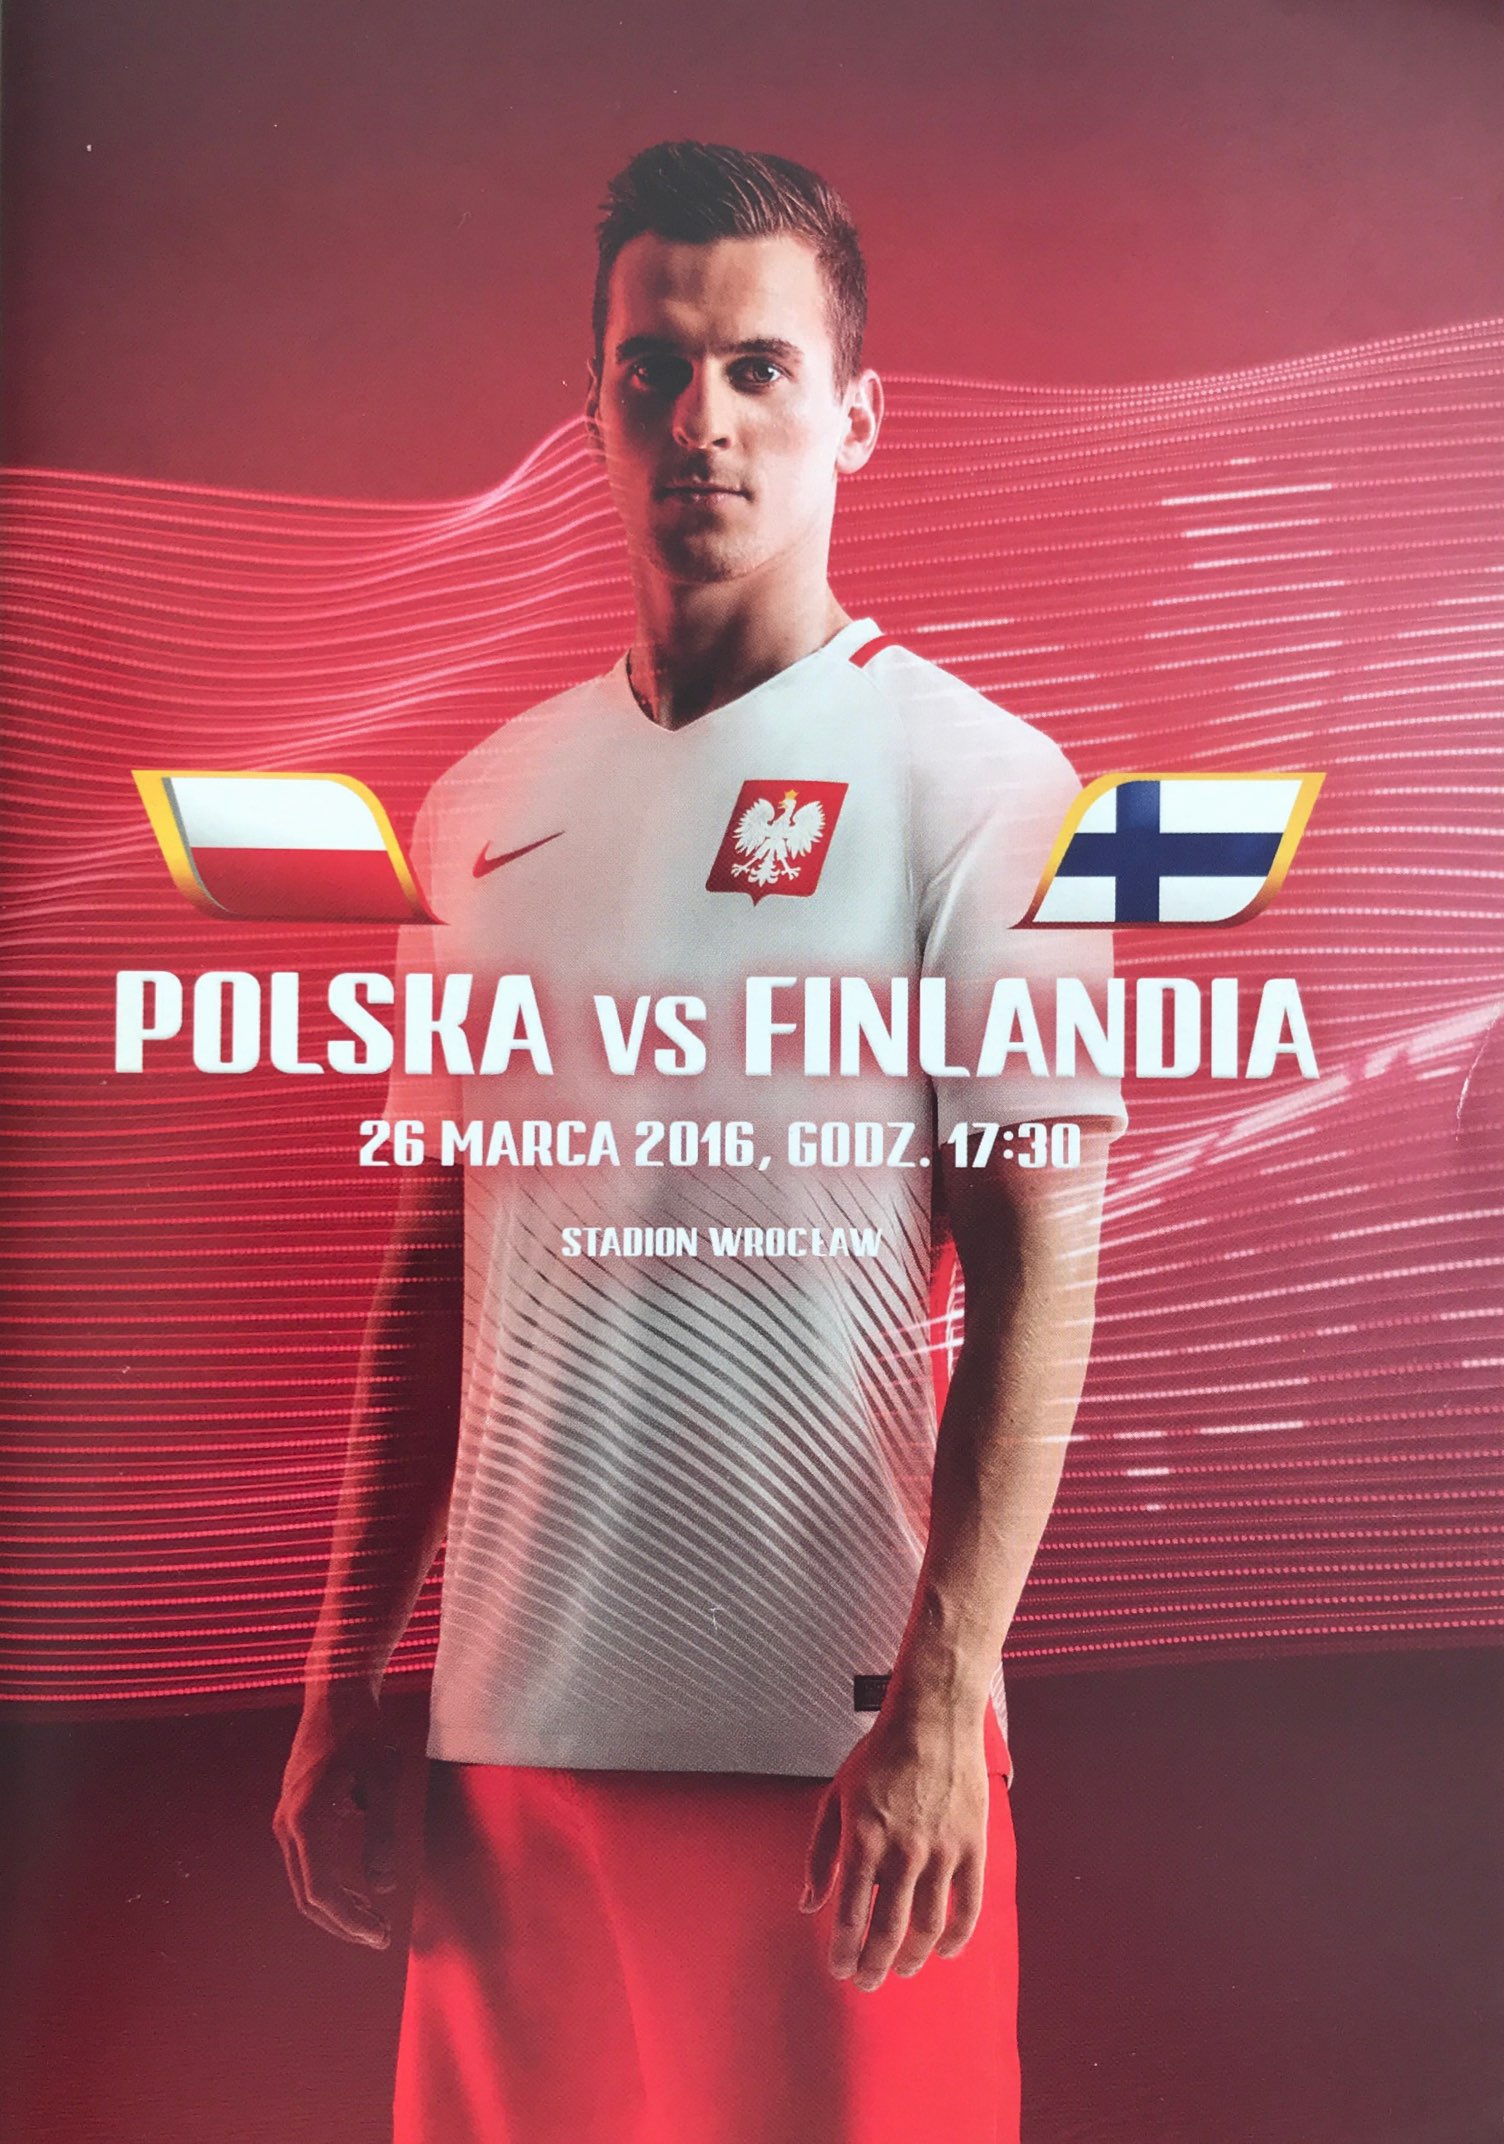 Program meczowy Polska - Finlandia 5:0 (26.03.2016).